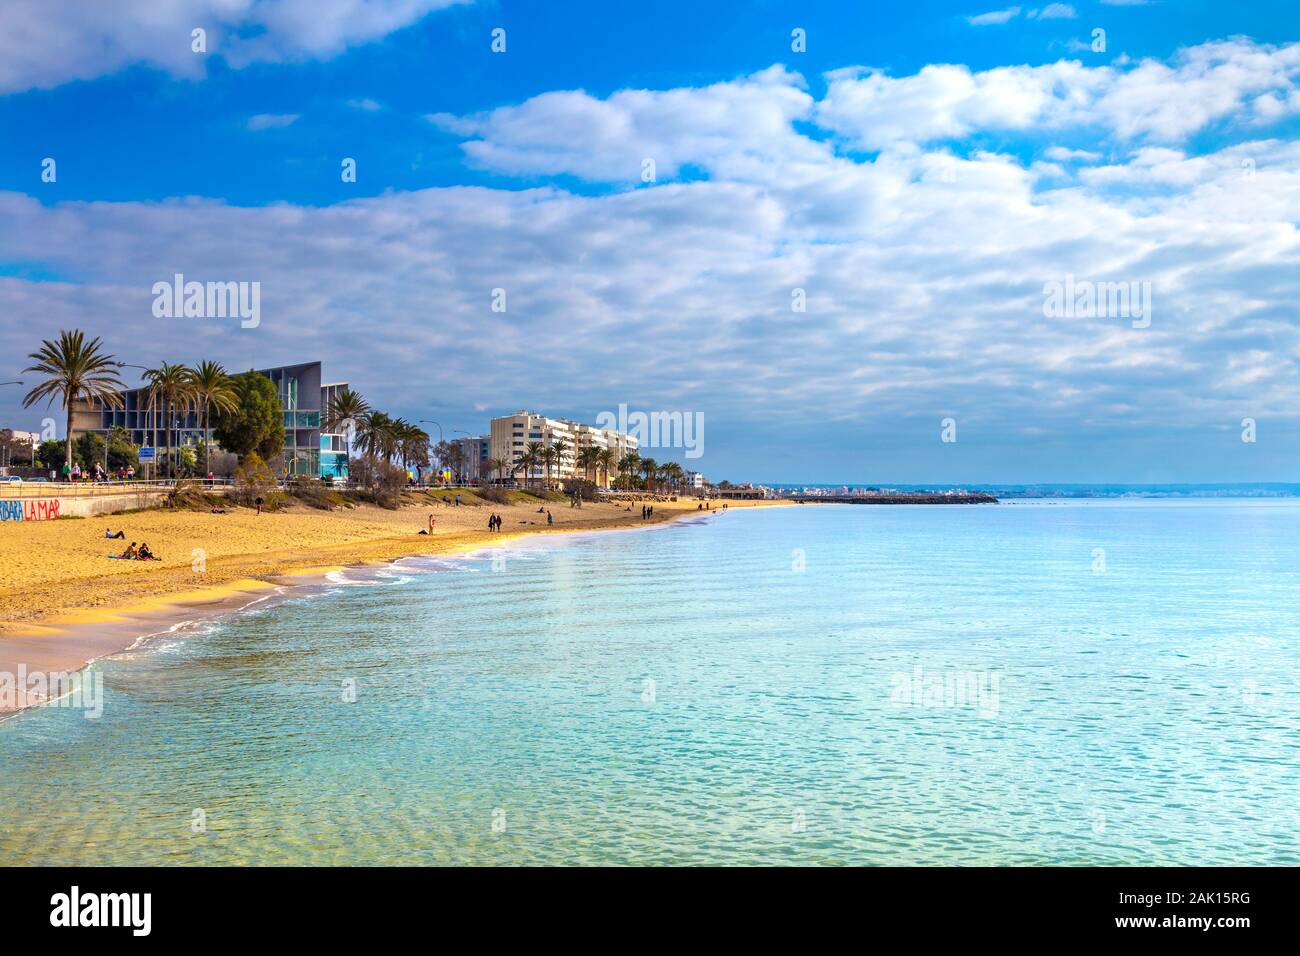 Platja de Can Pere Antoni beach and azure sea water, Mallorca, Spain Stock Photo